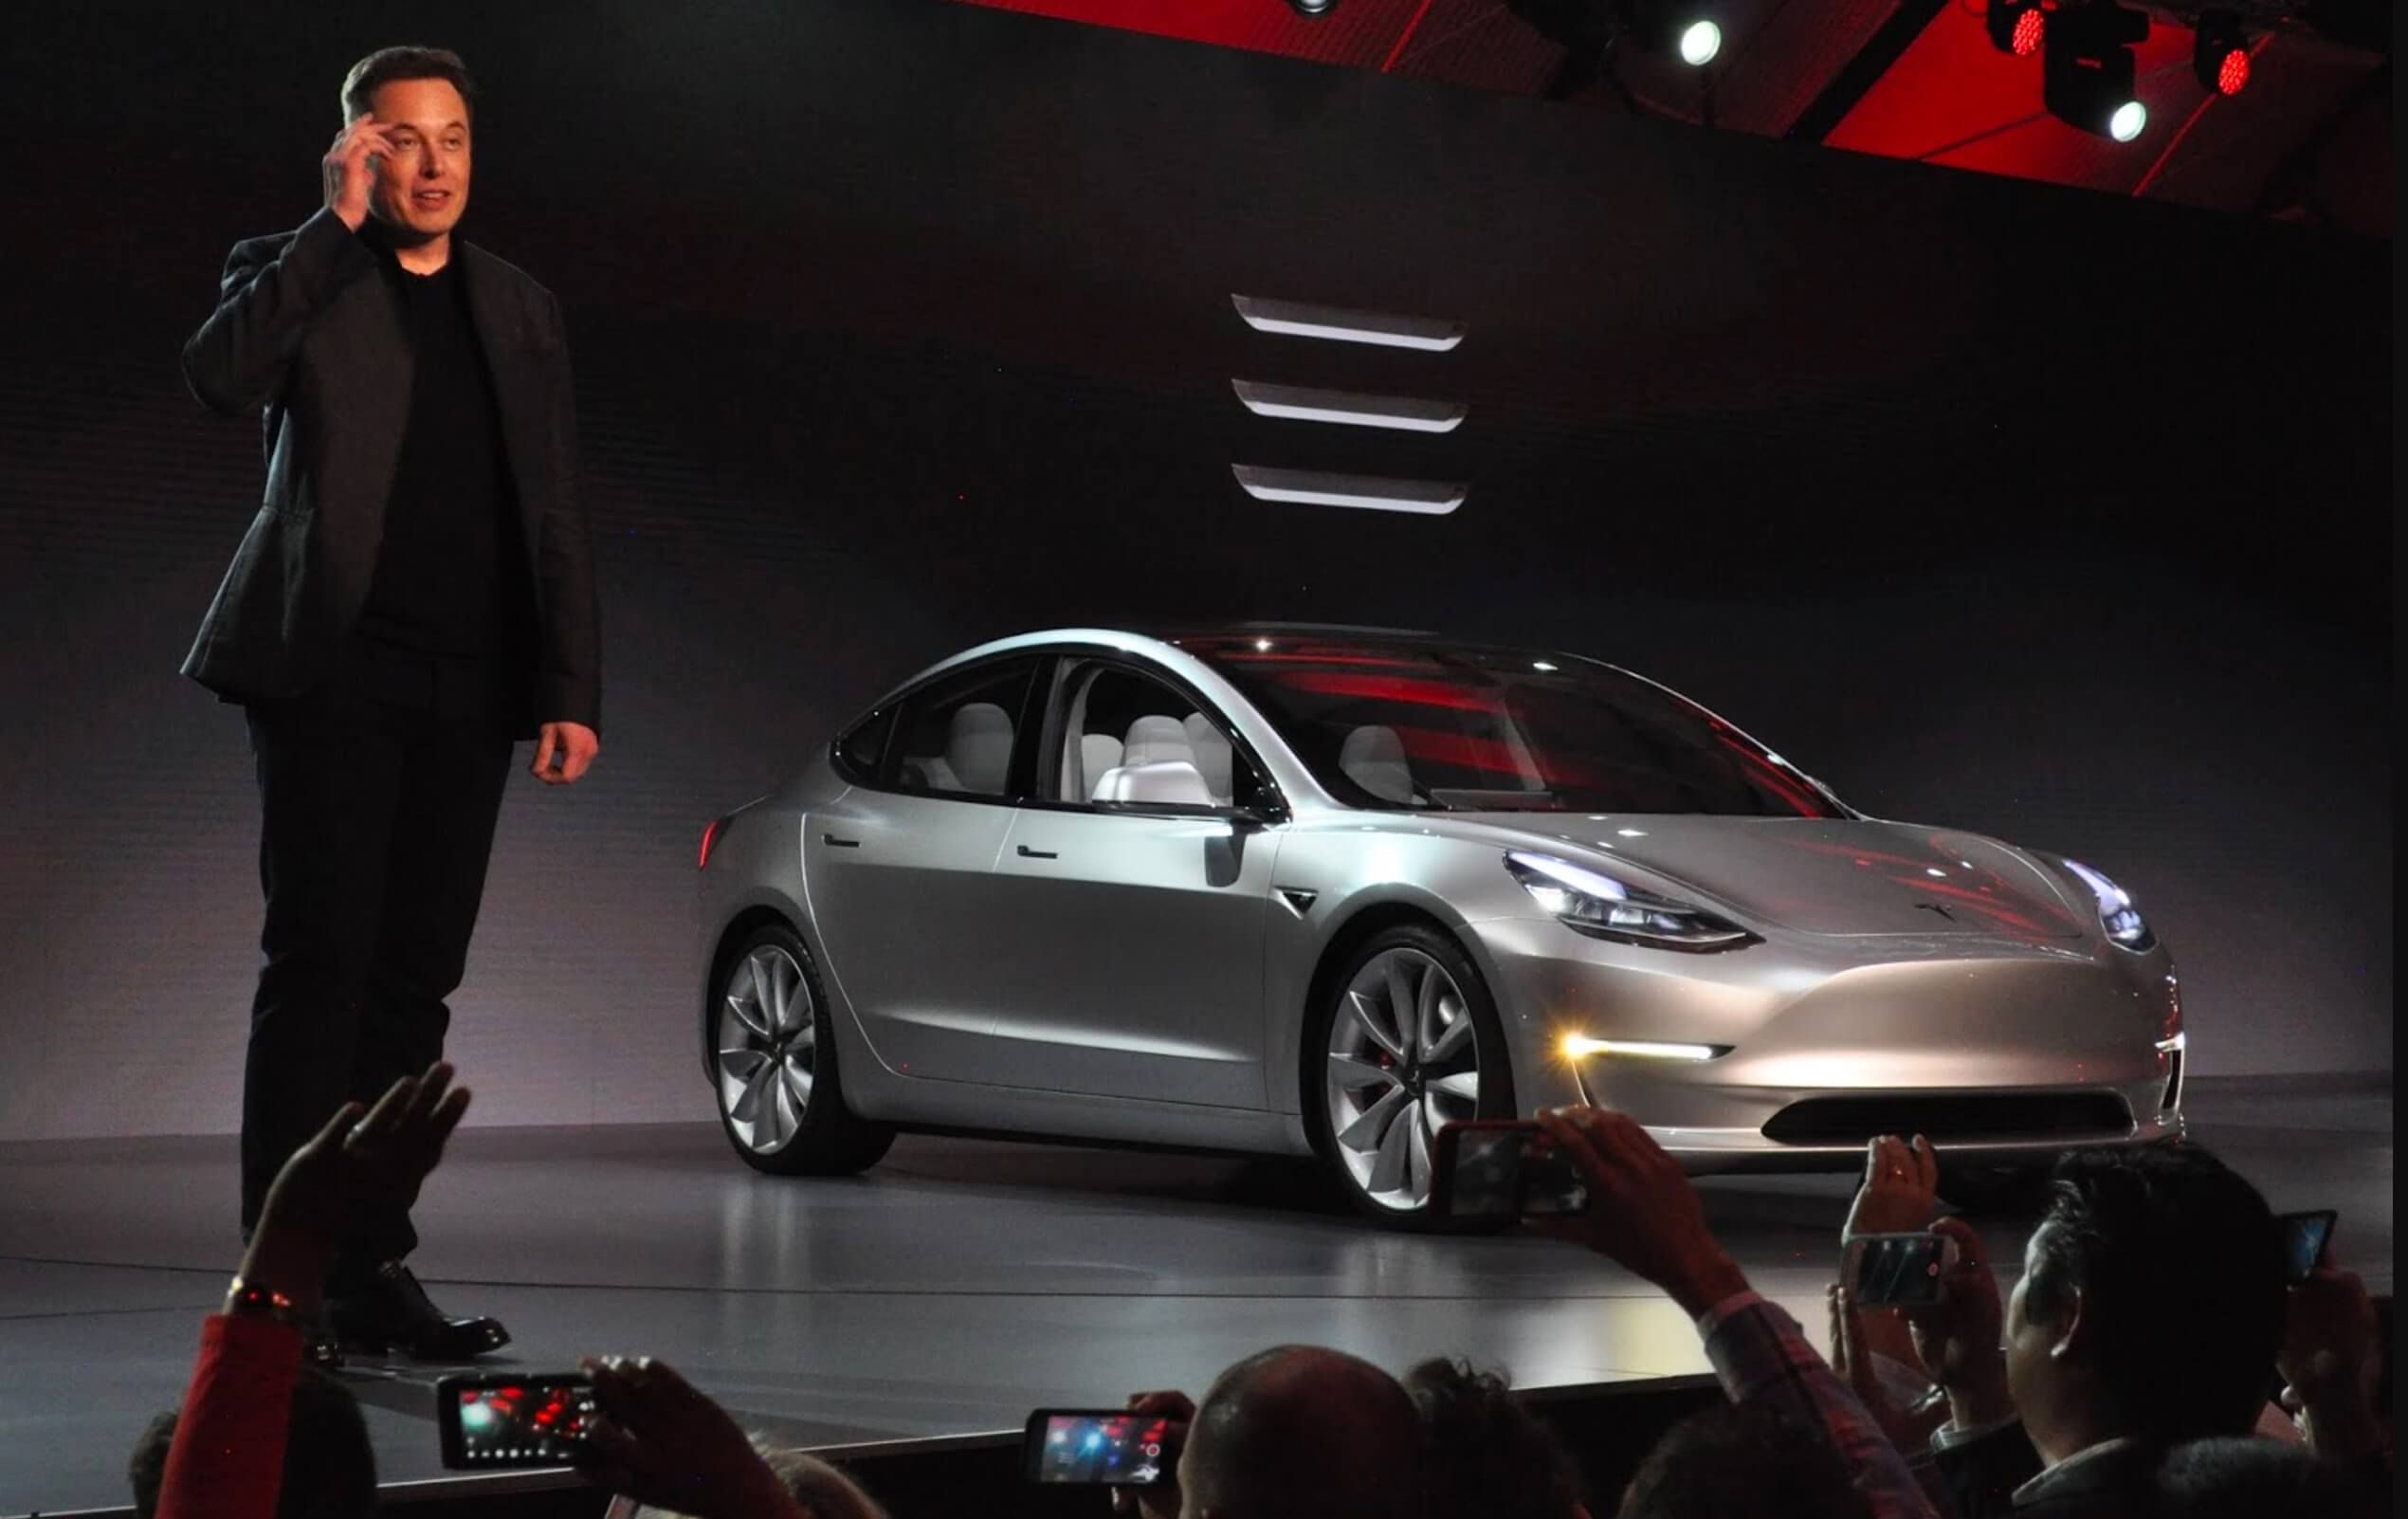 Tesla’s Musk accepterait la faillite si un rival construisait une meilleure voiture, selon un membre du conseil d’administration